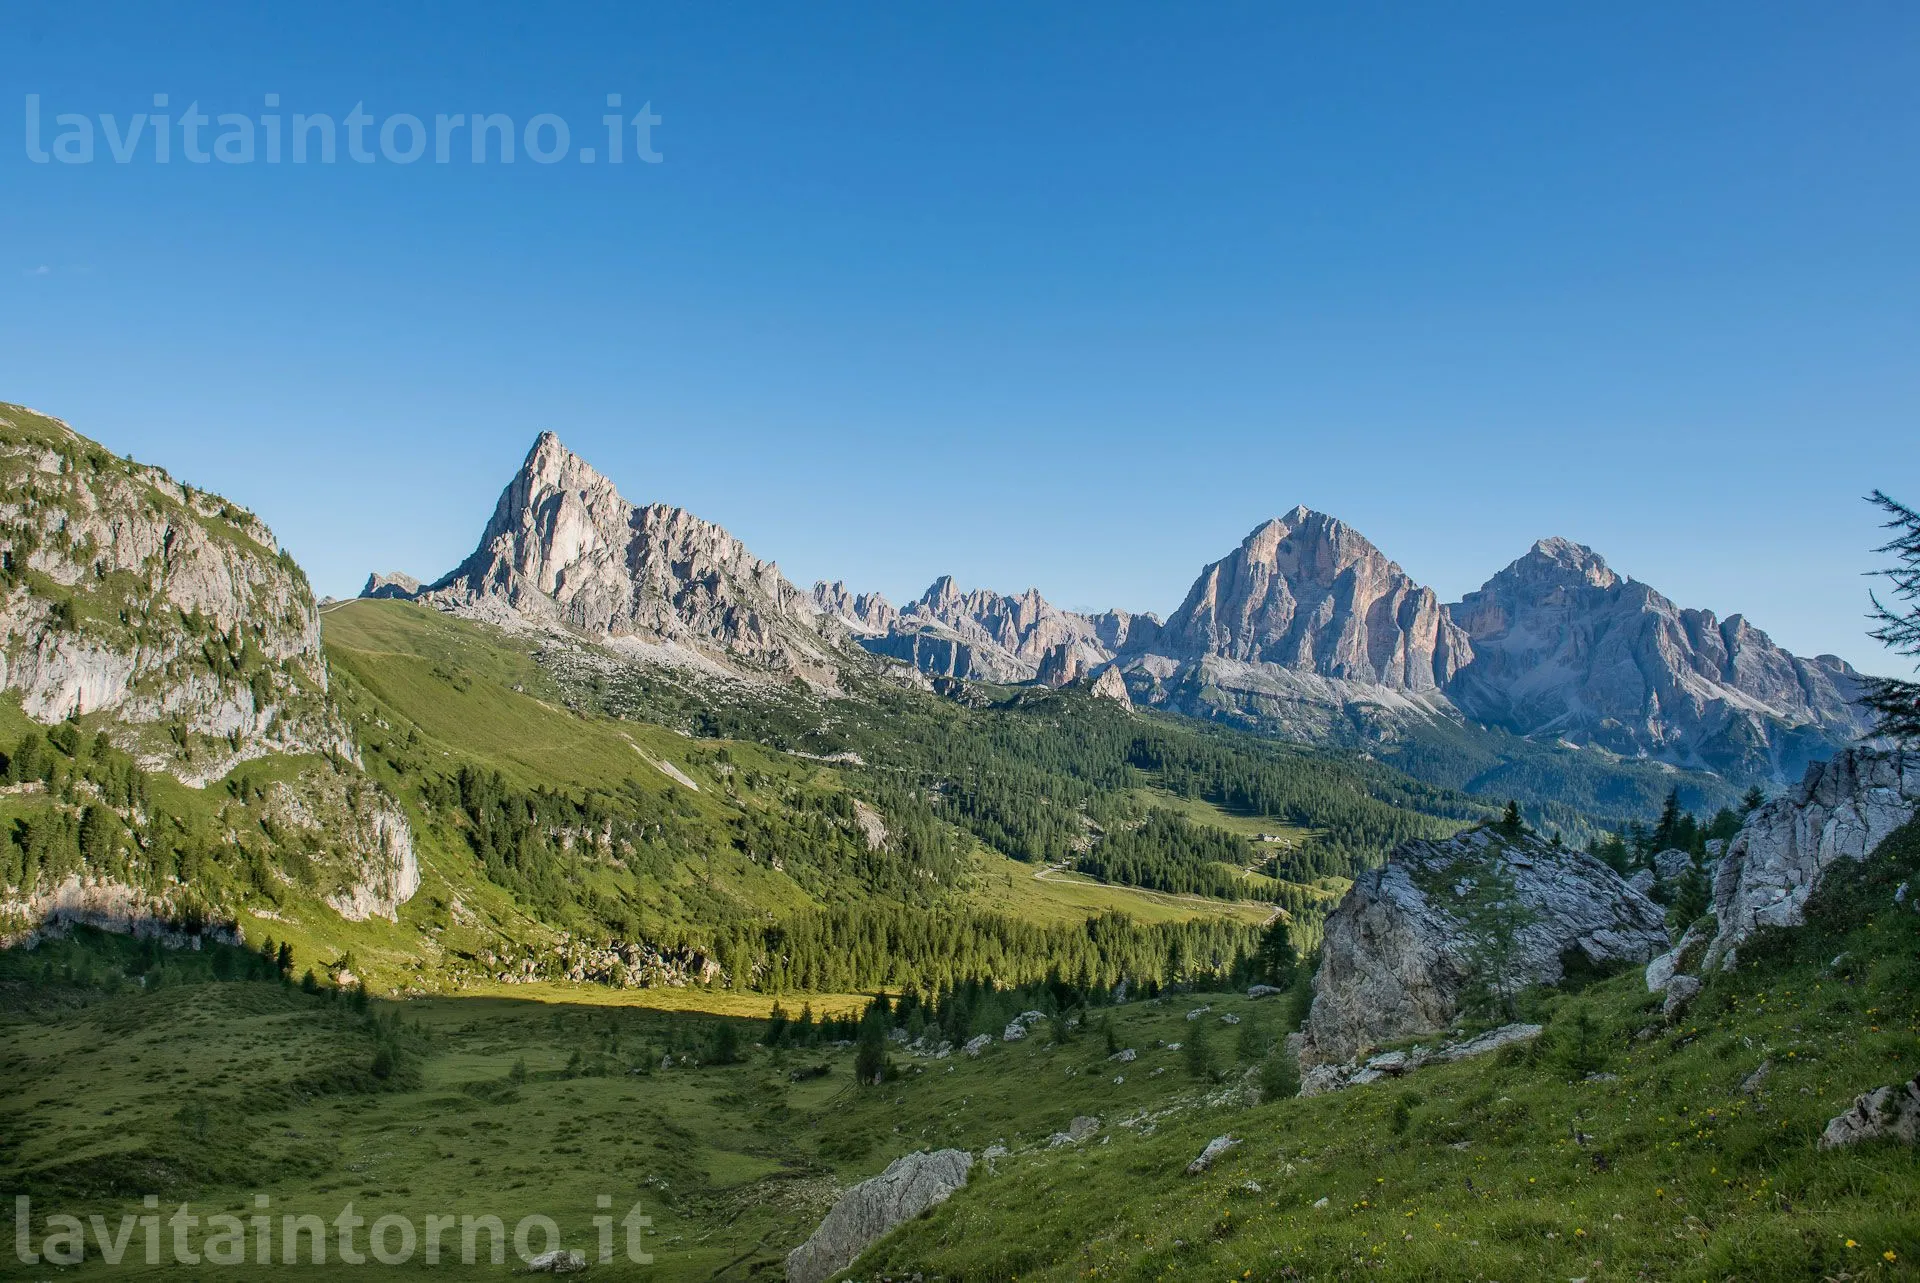 Dolomites view
D800E
Nikkor 24-70 F/2.8G AF-S